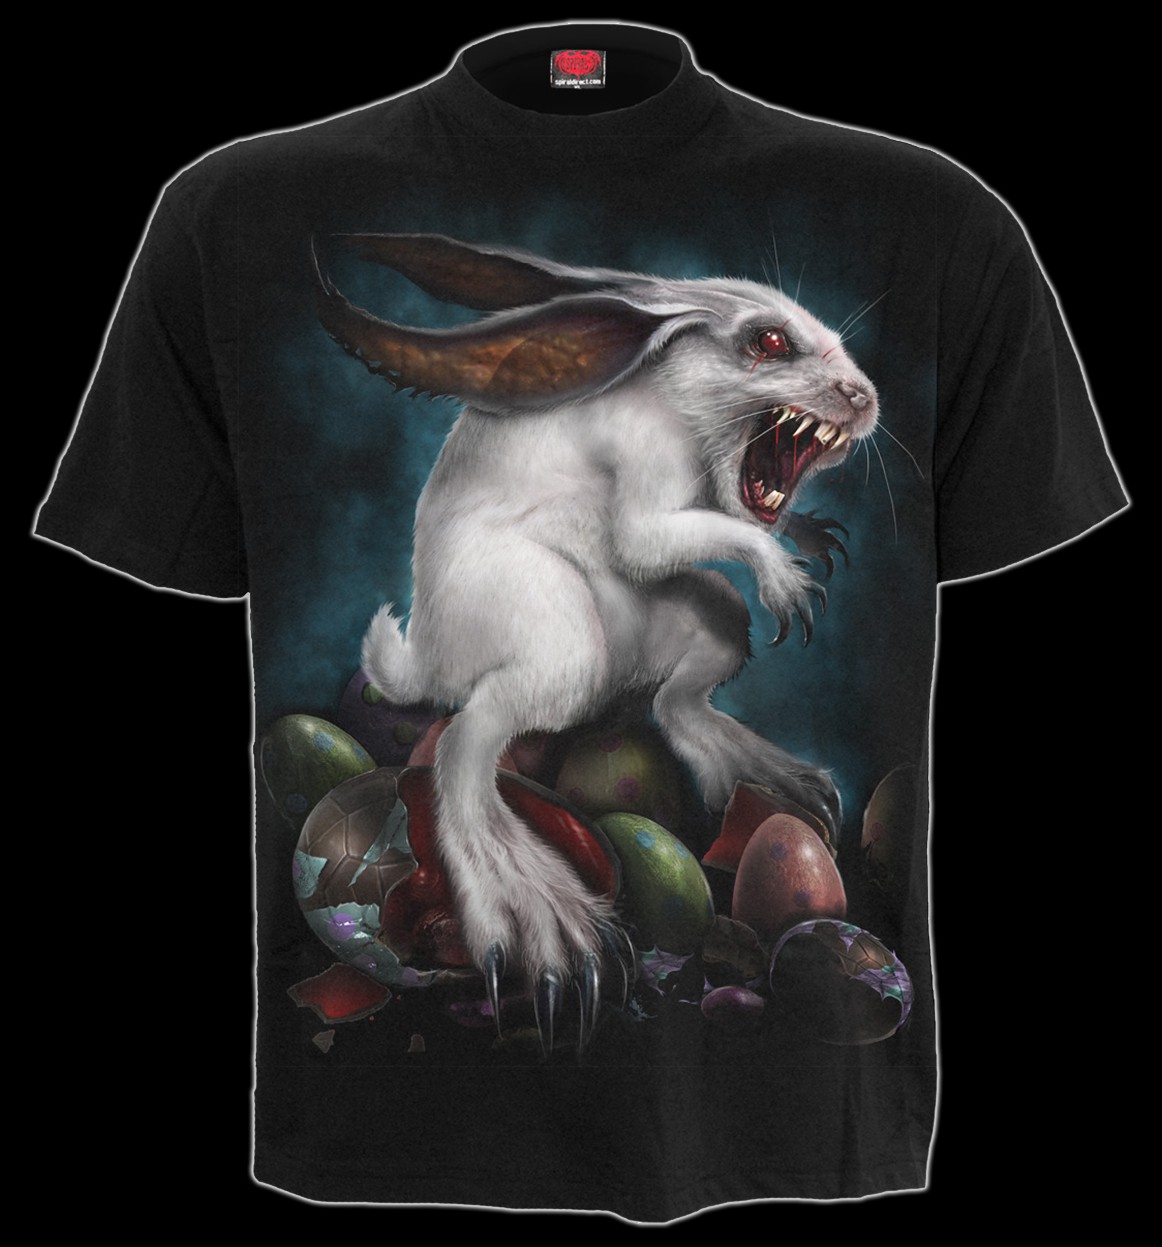 Rabbit Hole - Gothic T-Shirt